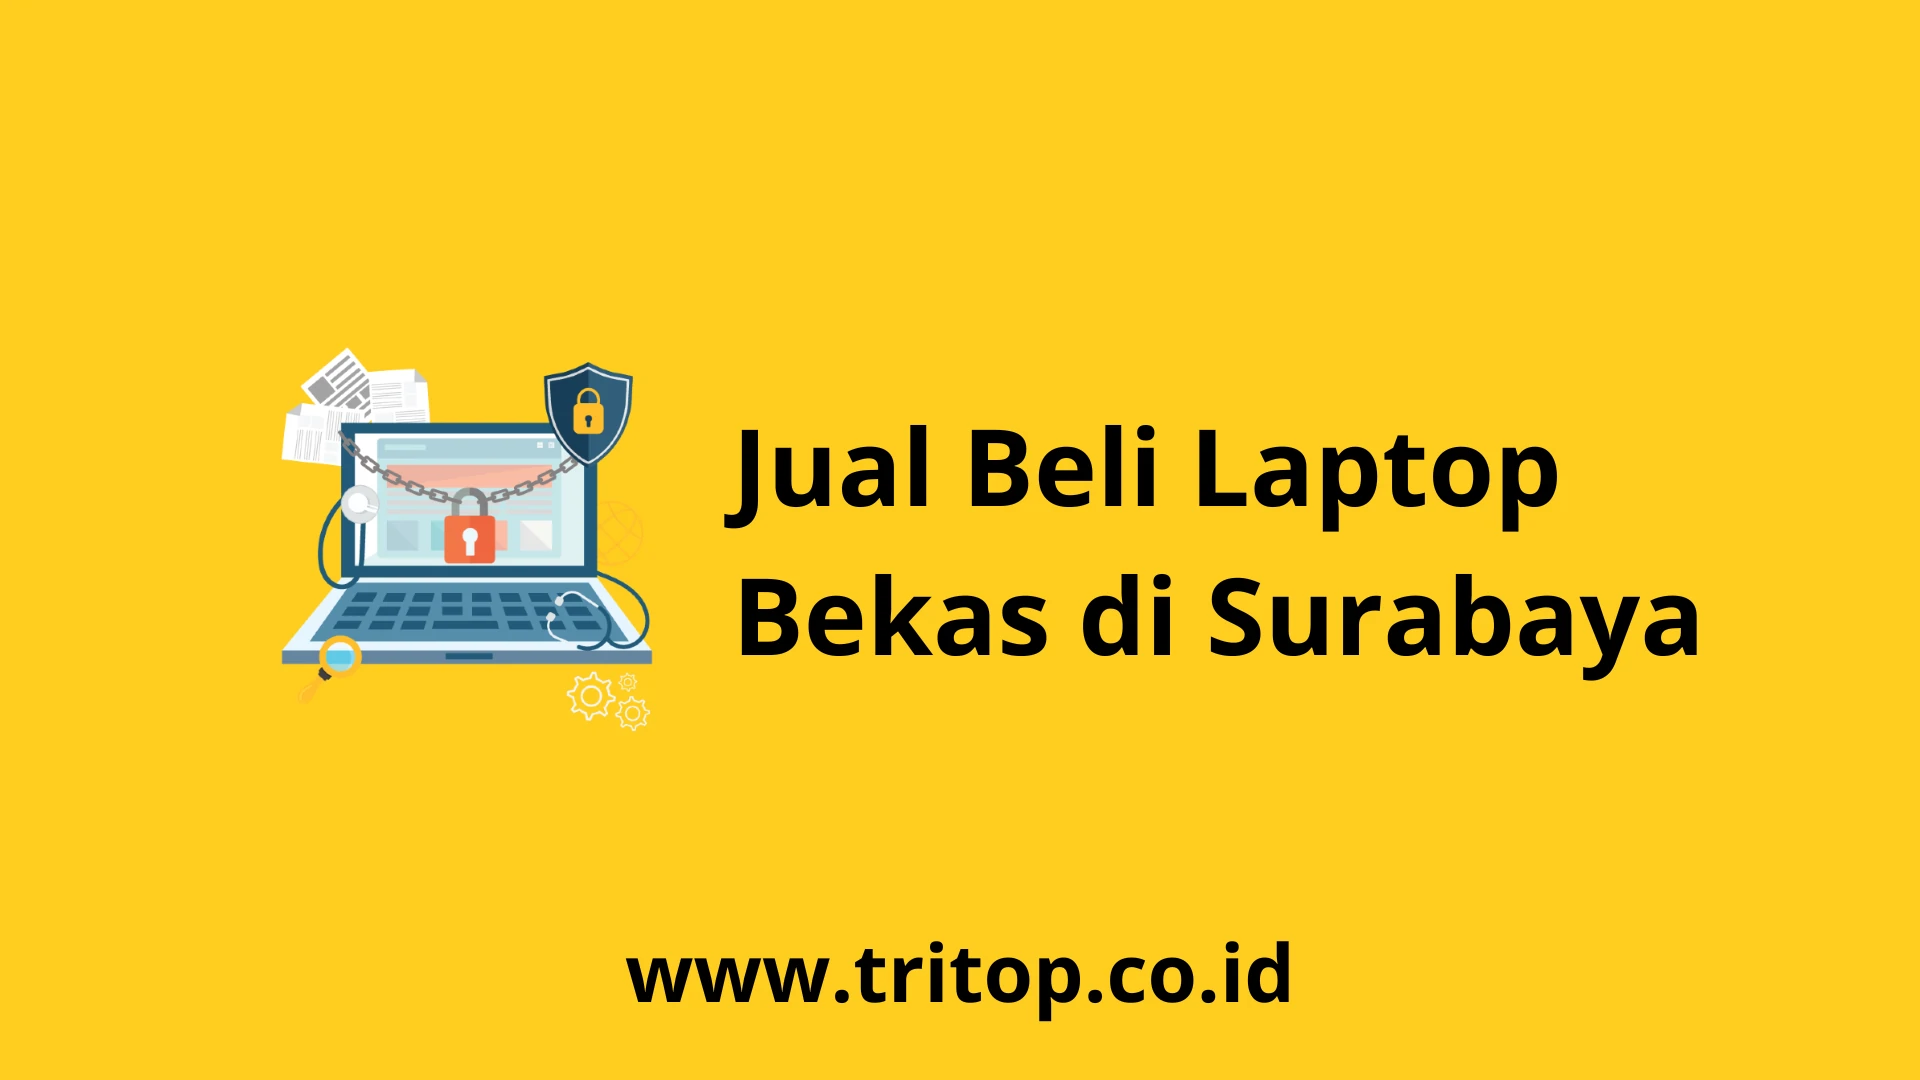 Jual Beli Laptop Bekas di Surabaya www.tritop.co.id